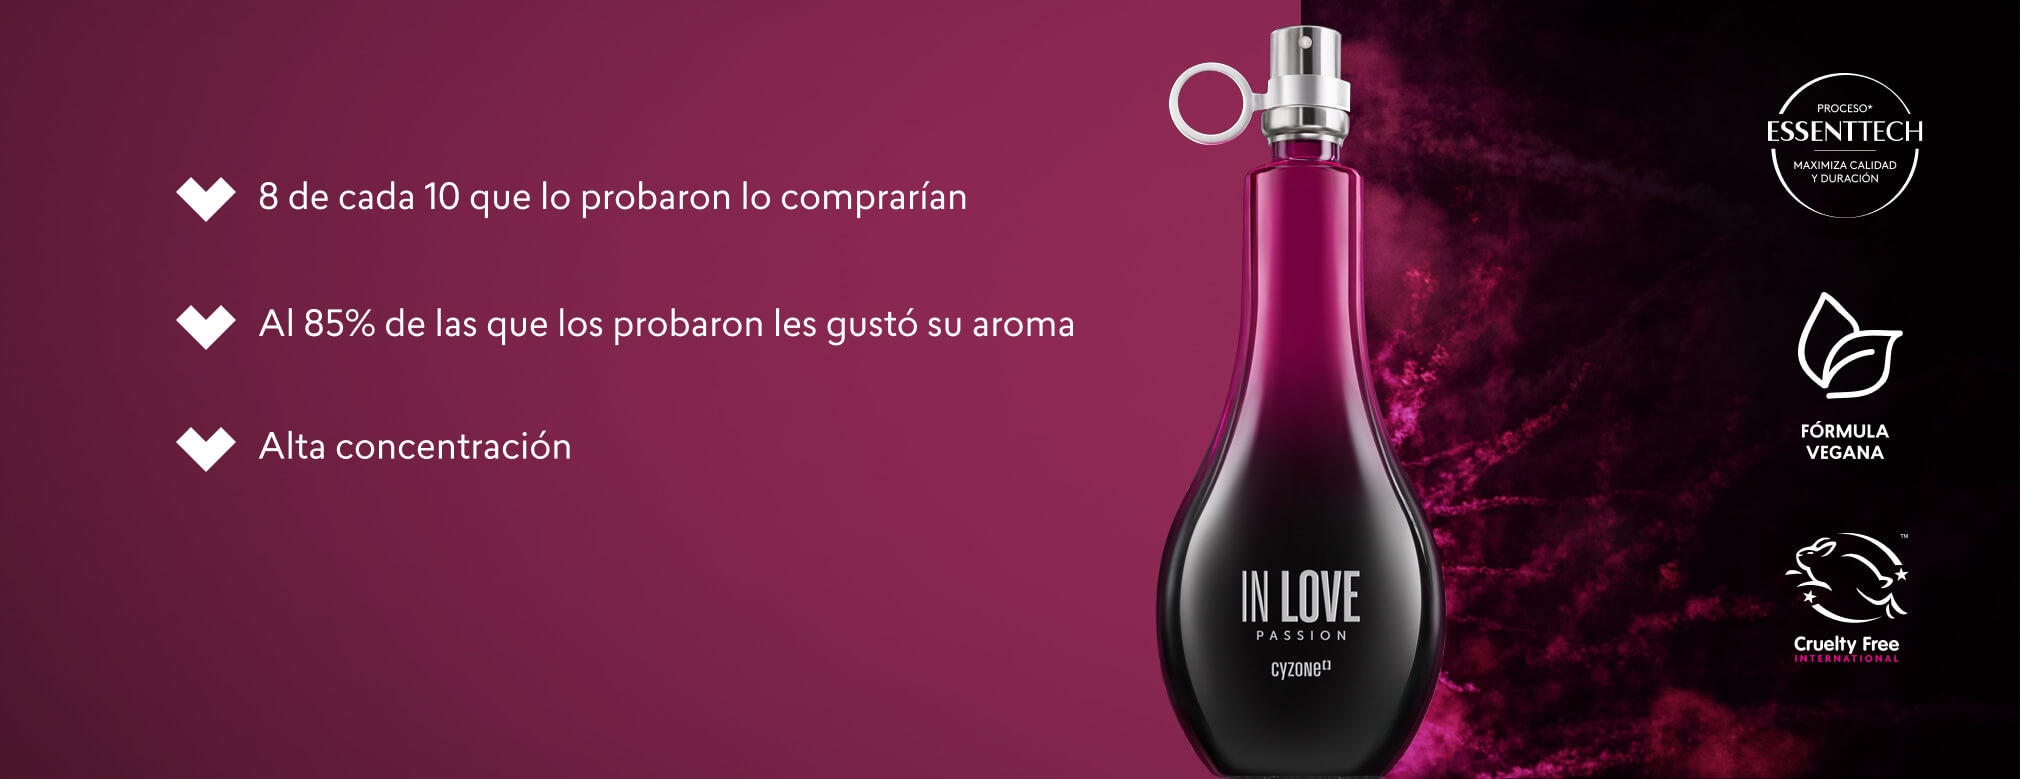 Nuevo perfume dulce y duradero In Love Passion de Cyzone